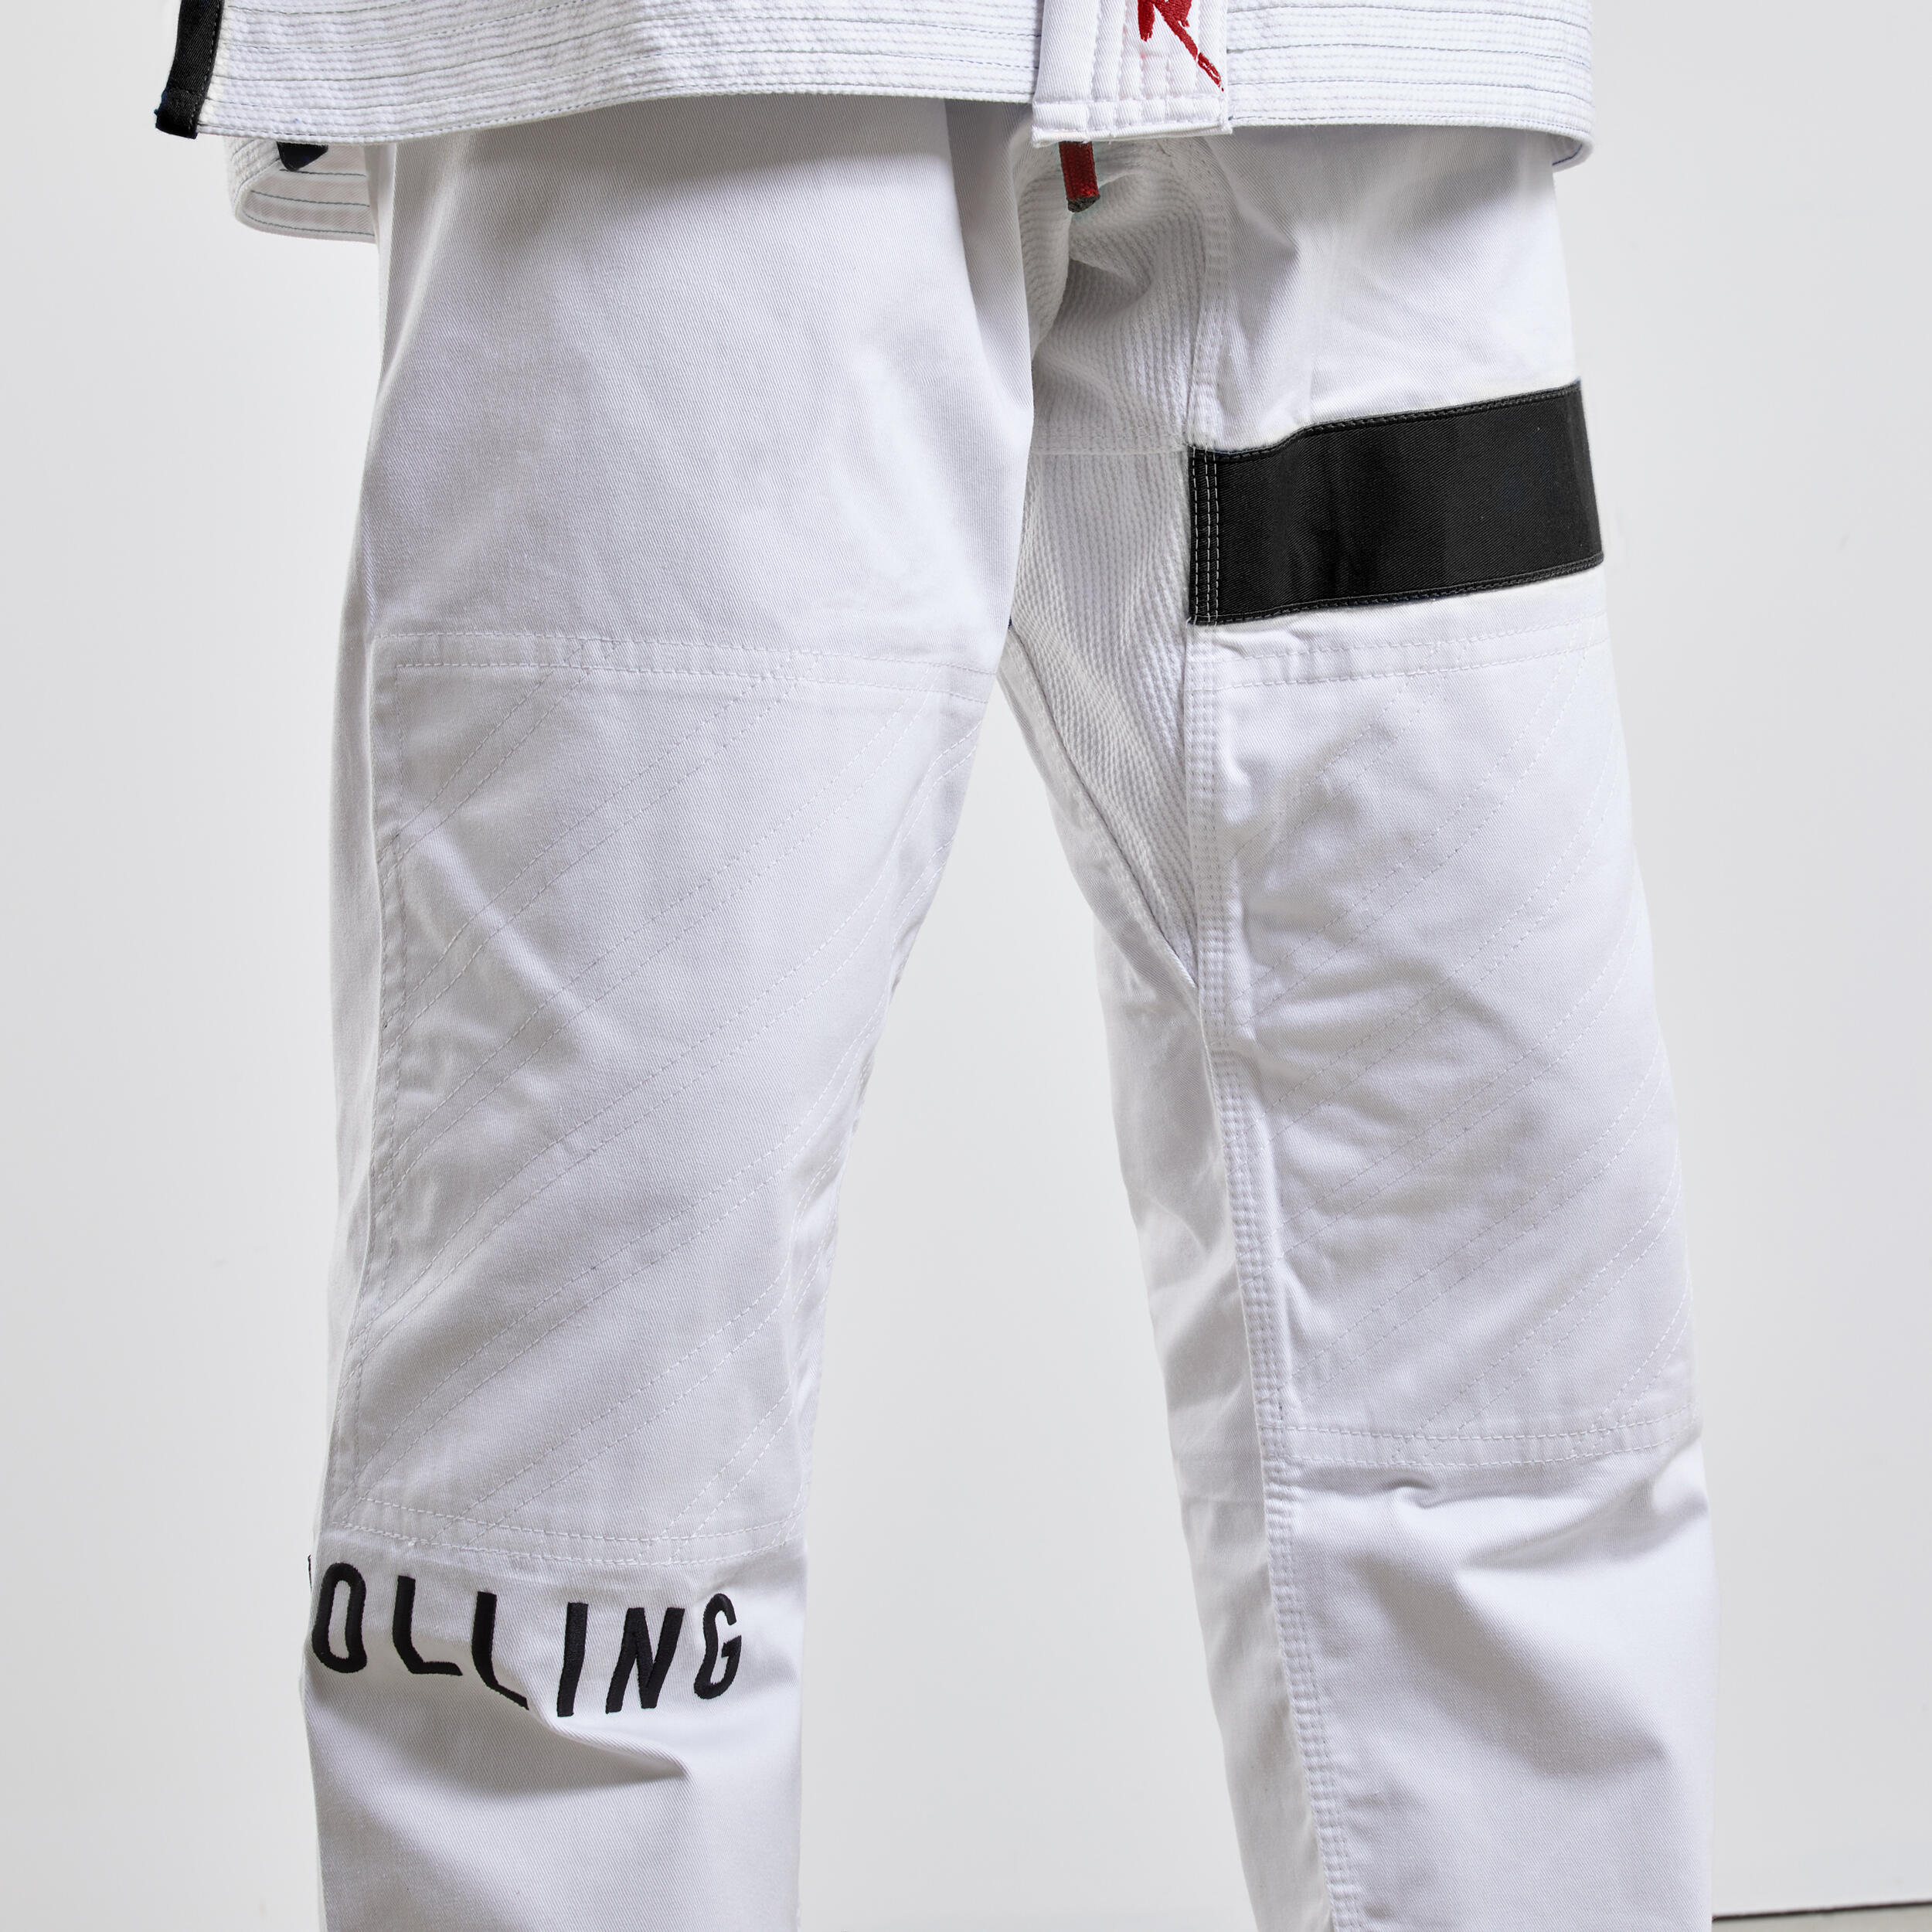 500 Brazilian Jiu-Jitsu Uniform - White 7/9